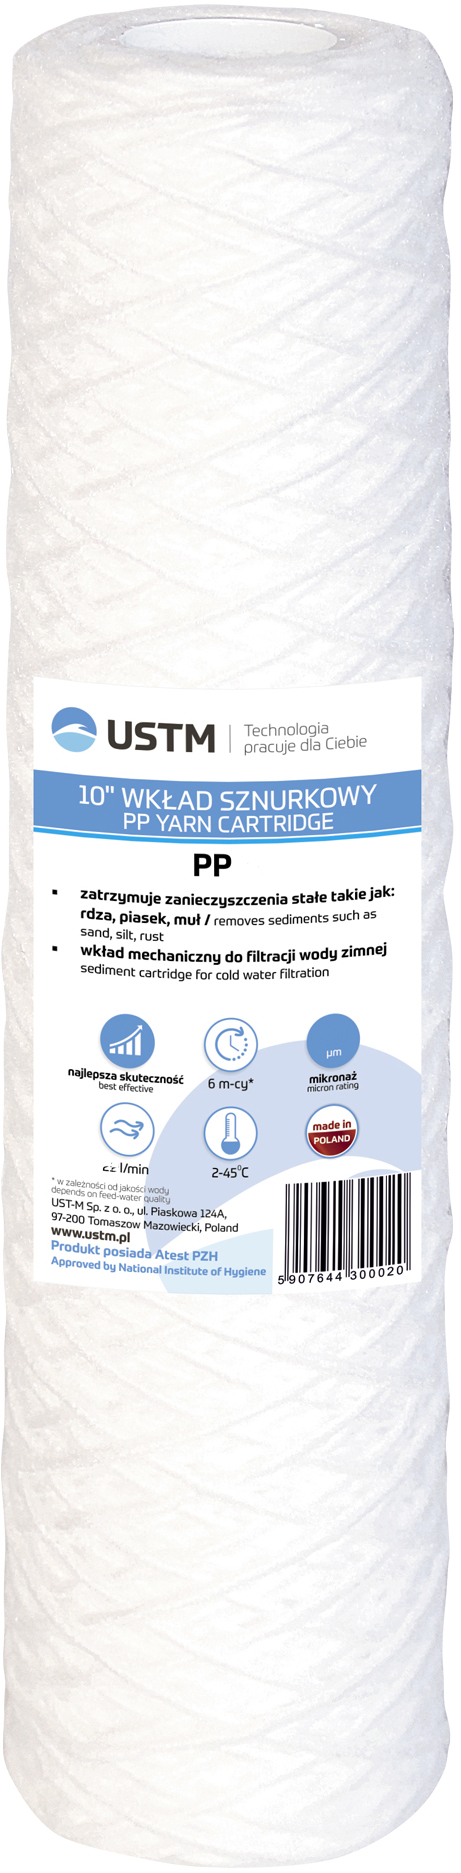 Картридж для фильтра USTM PP5